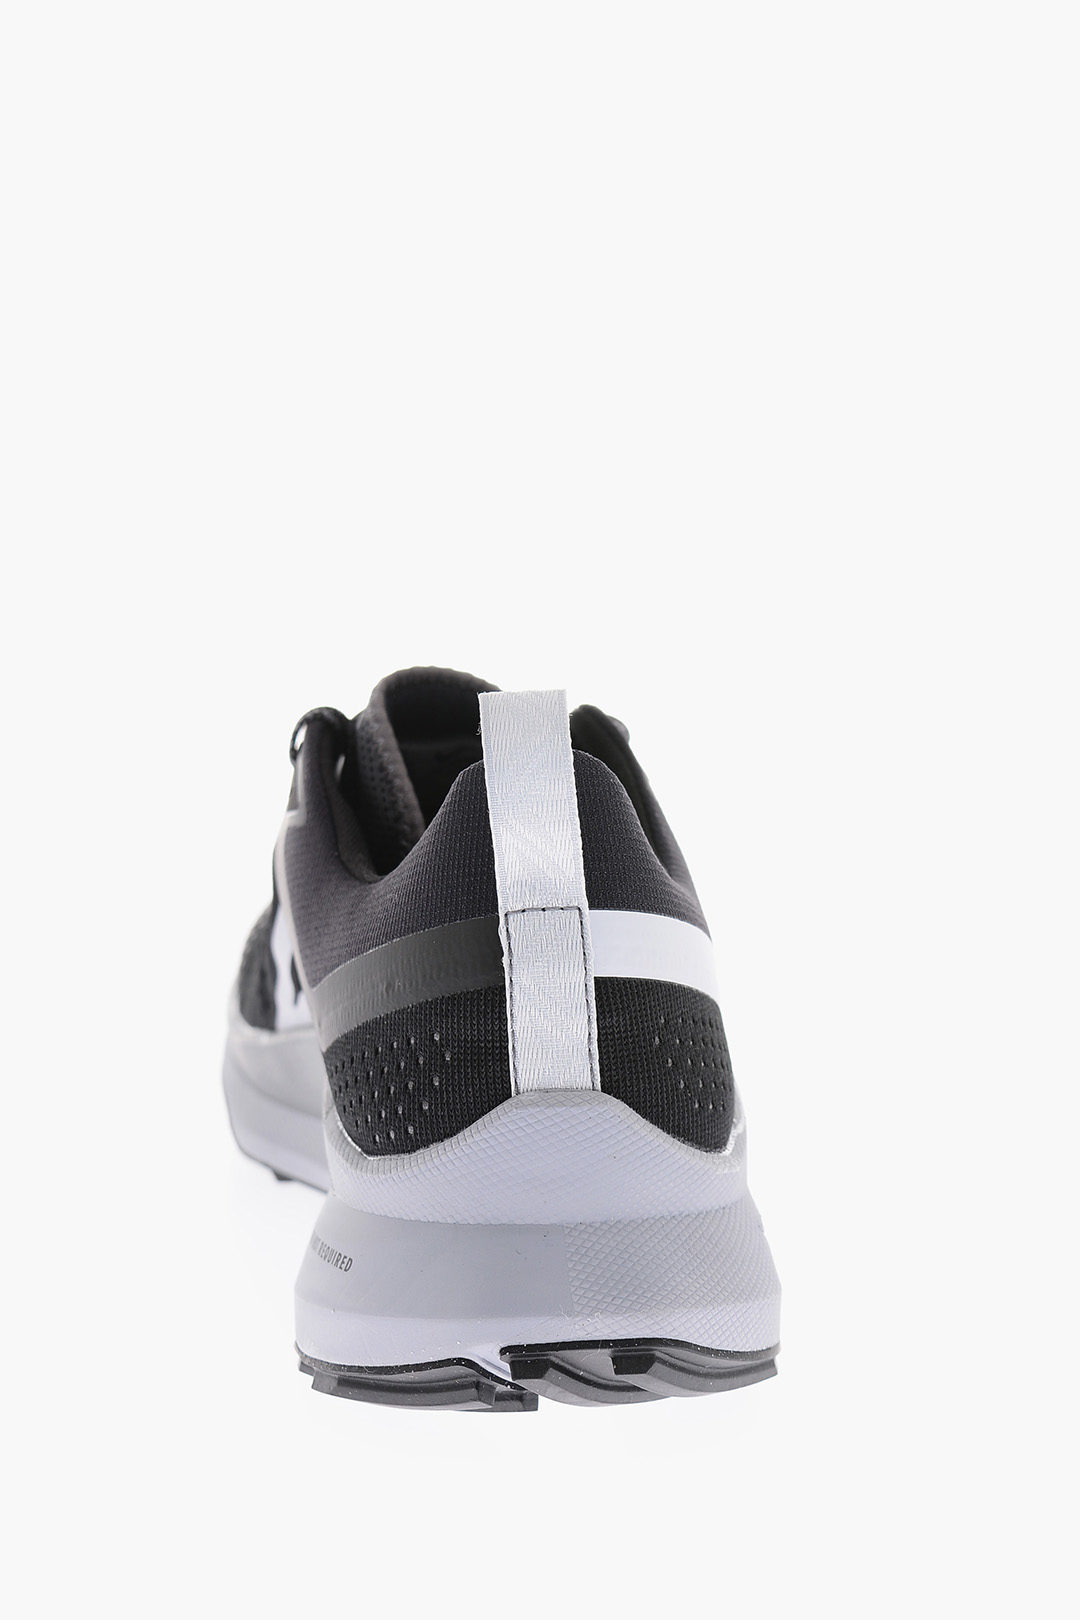 Nike Fabric REACT PEGASUS TRIAL Sneakers men - Glamood